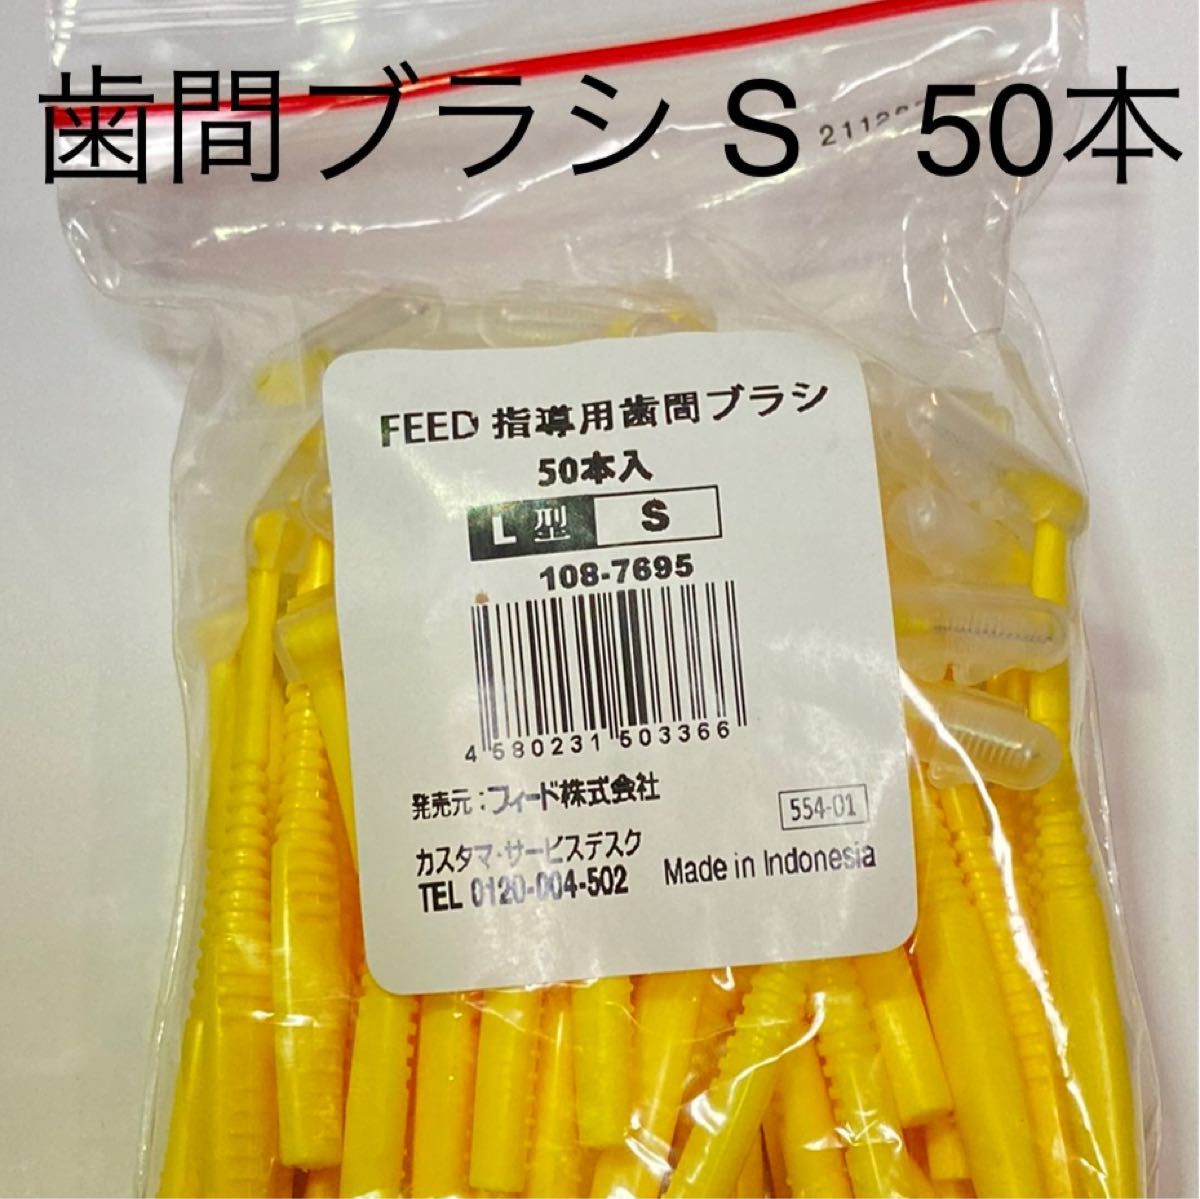 feed  L字歯間ブラシ S 50本